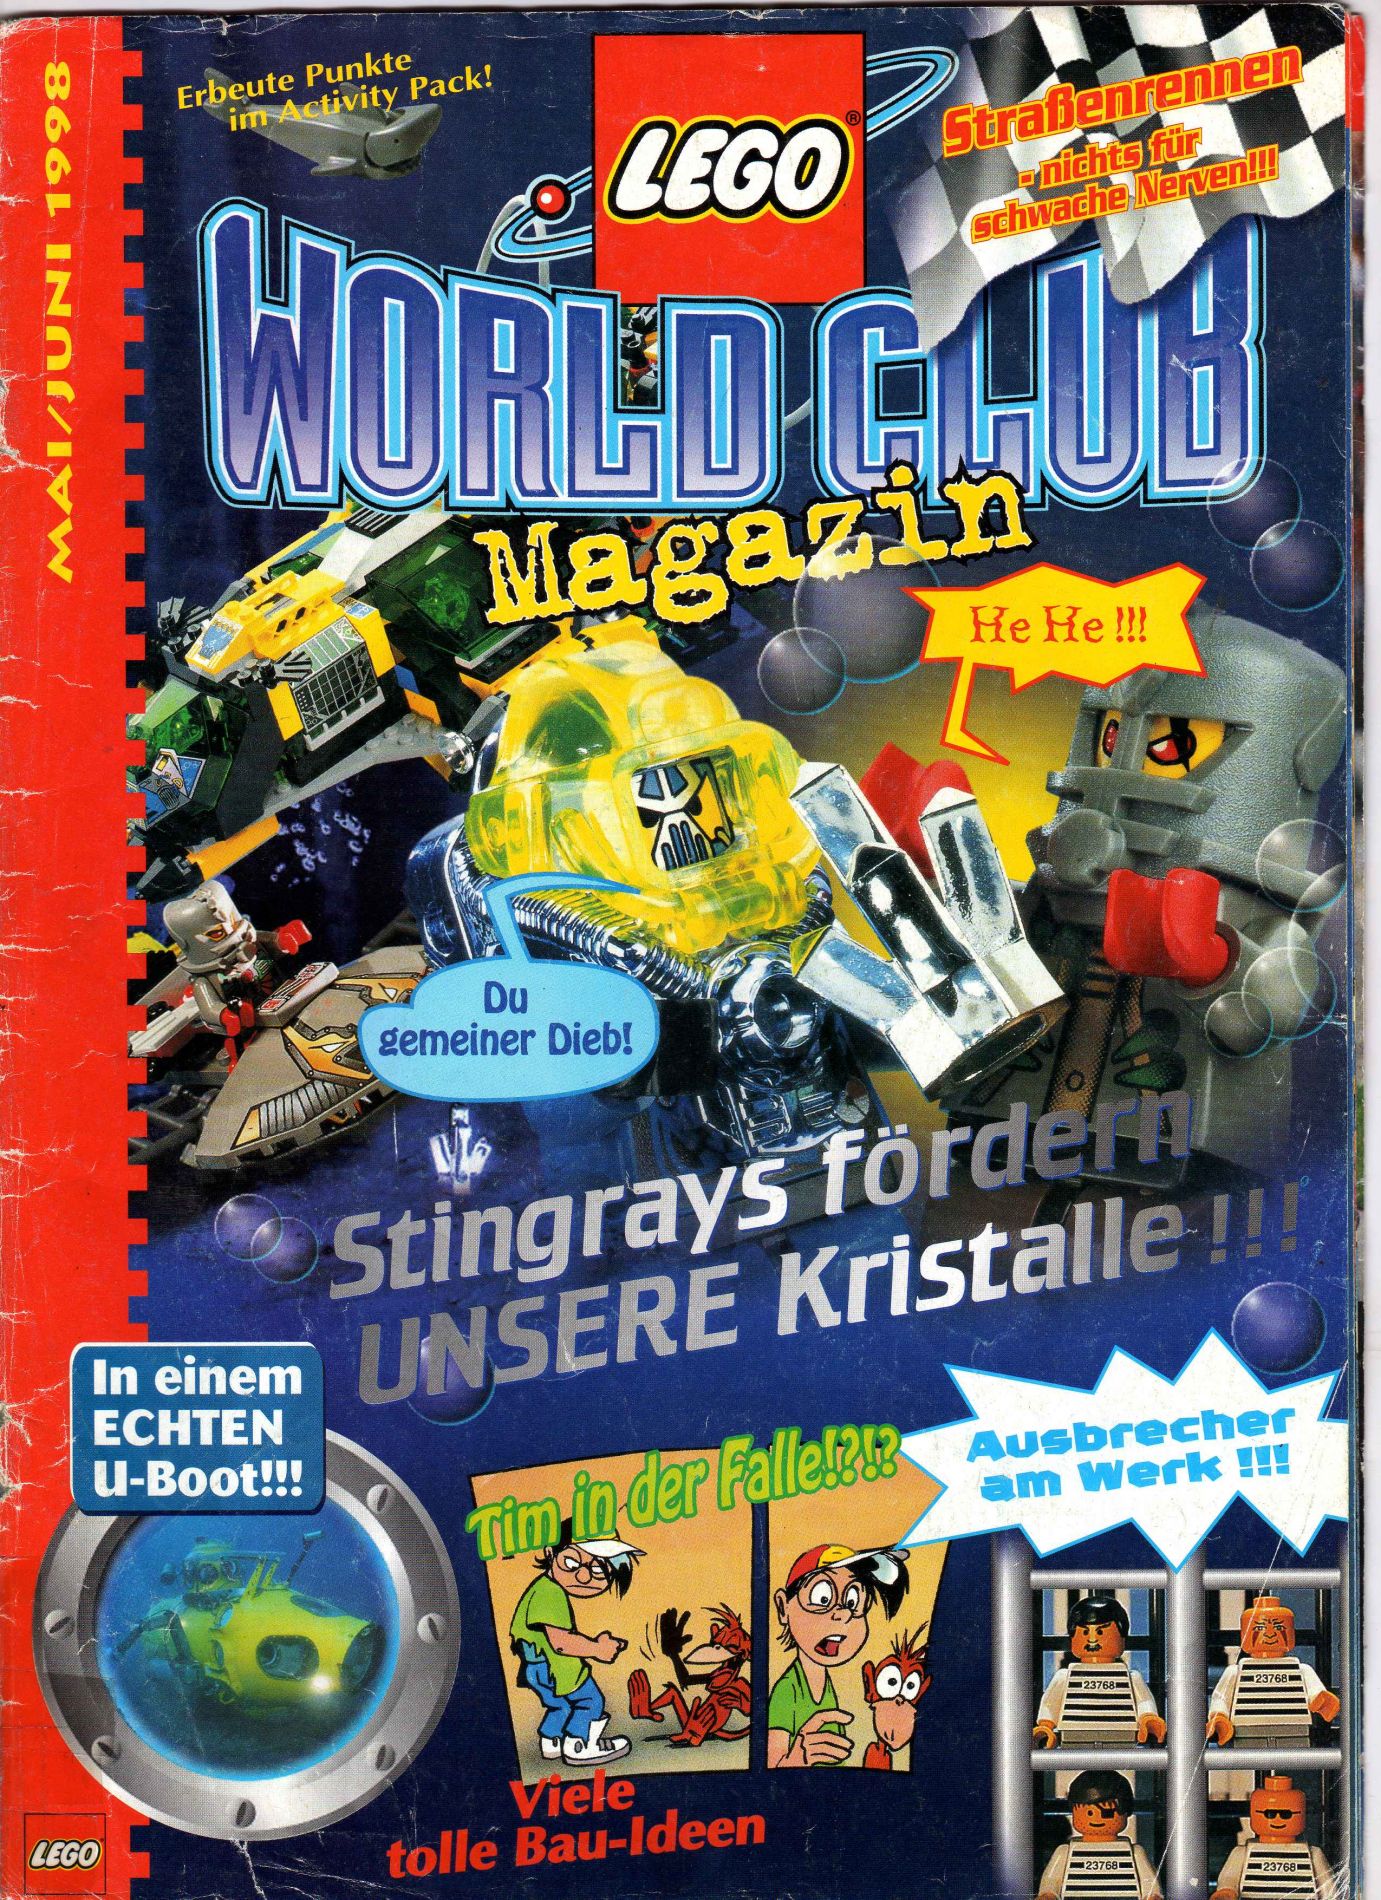 LEGO World Club 1998 Issue 3